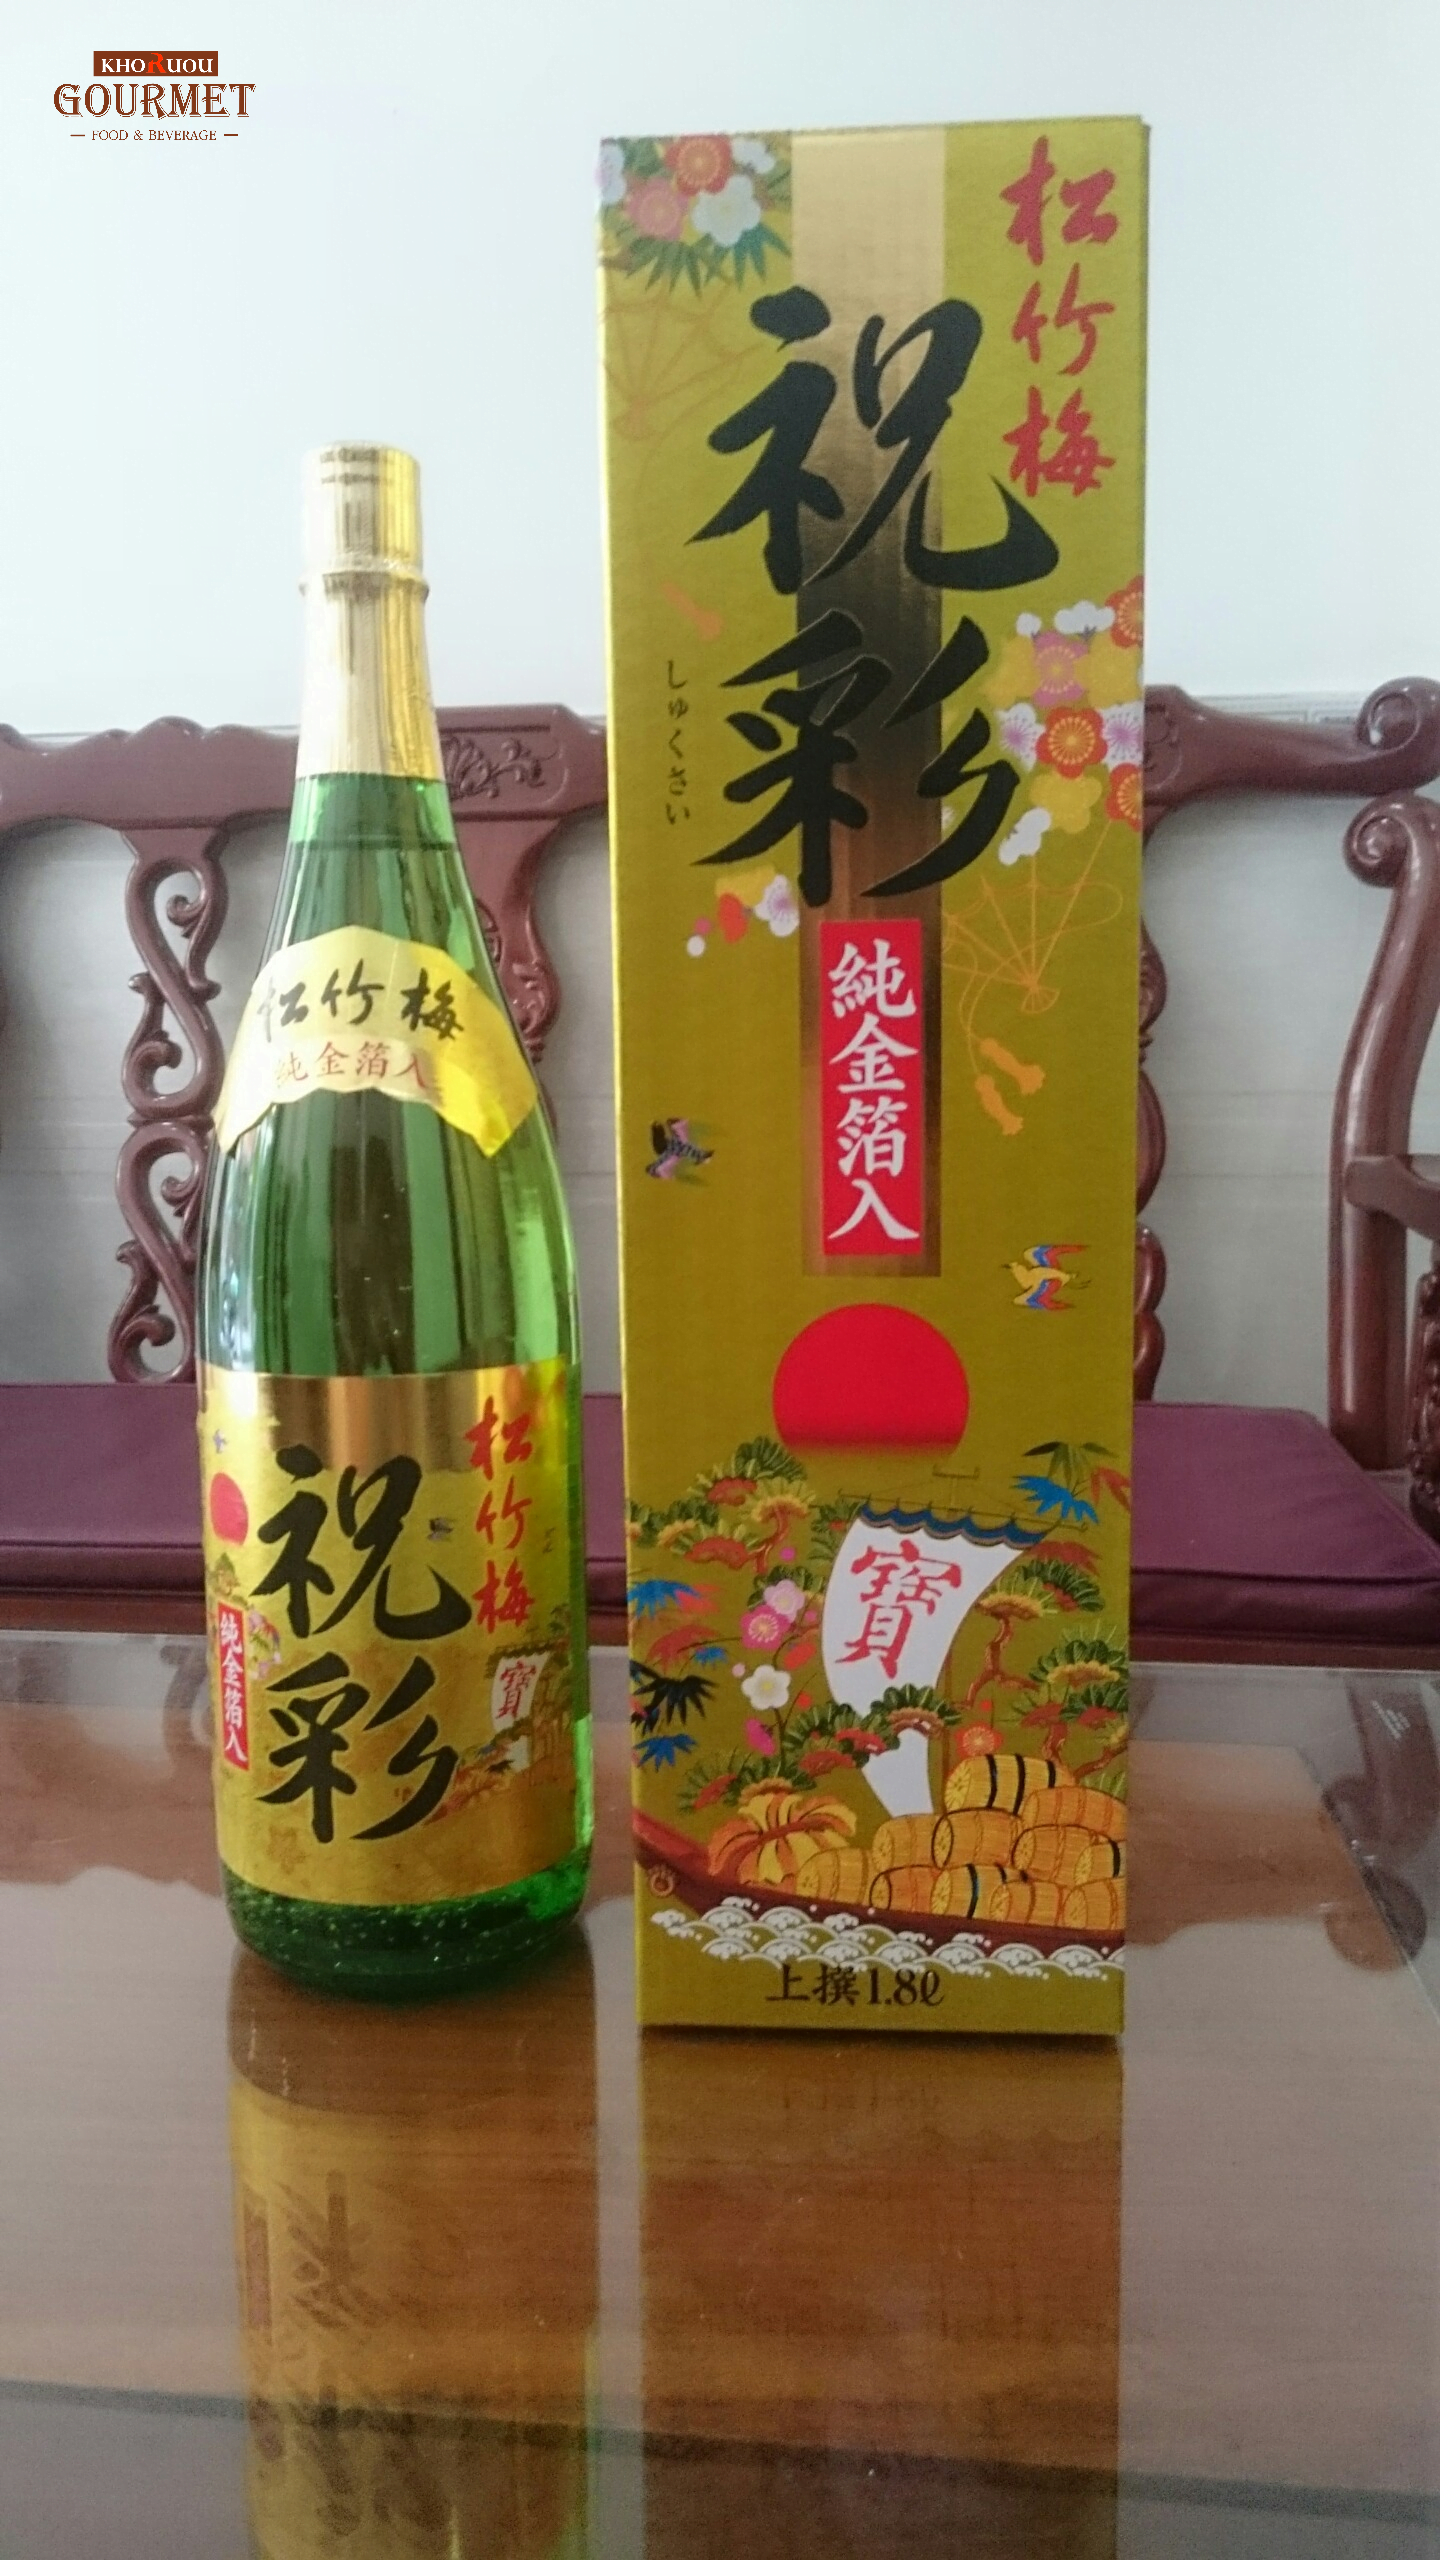 Với hương vị rượu thơm ngon, dễ uống, rượu sake vẩy vàng 1.8l rất đáng để phục vụ gia đình bạn trong dịp Tết cổ truyền tại Việt Nam